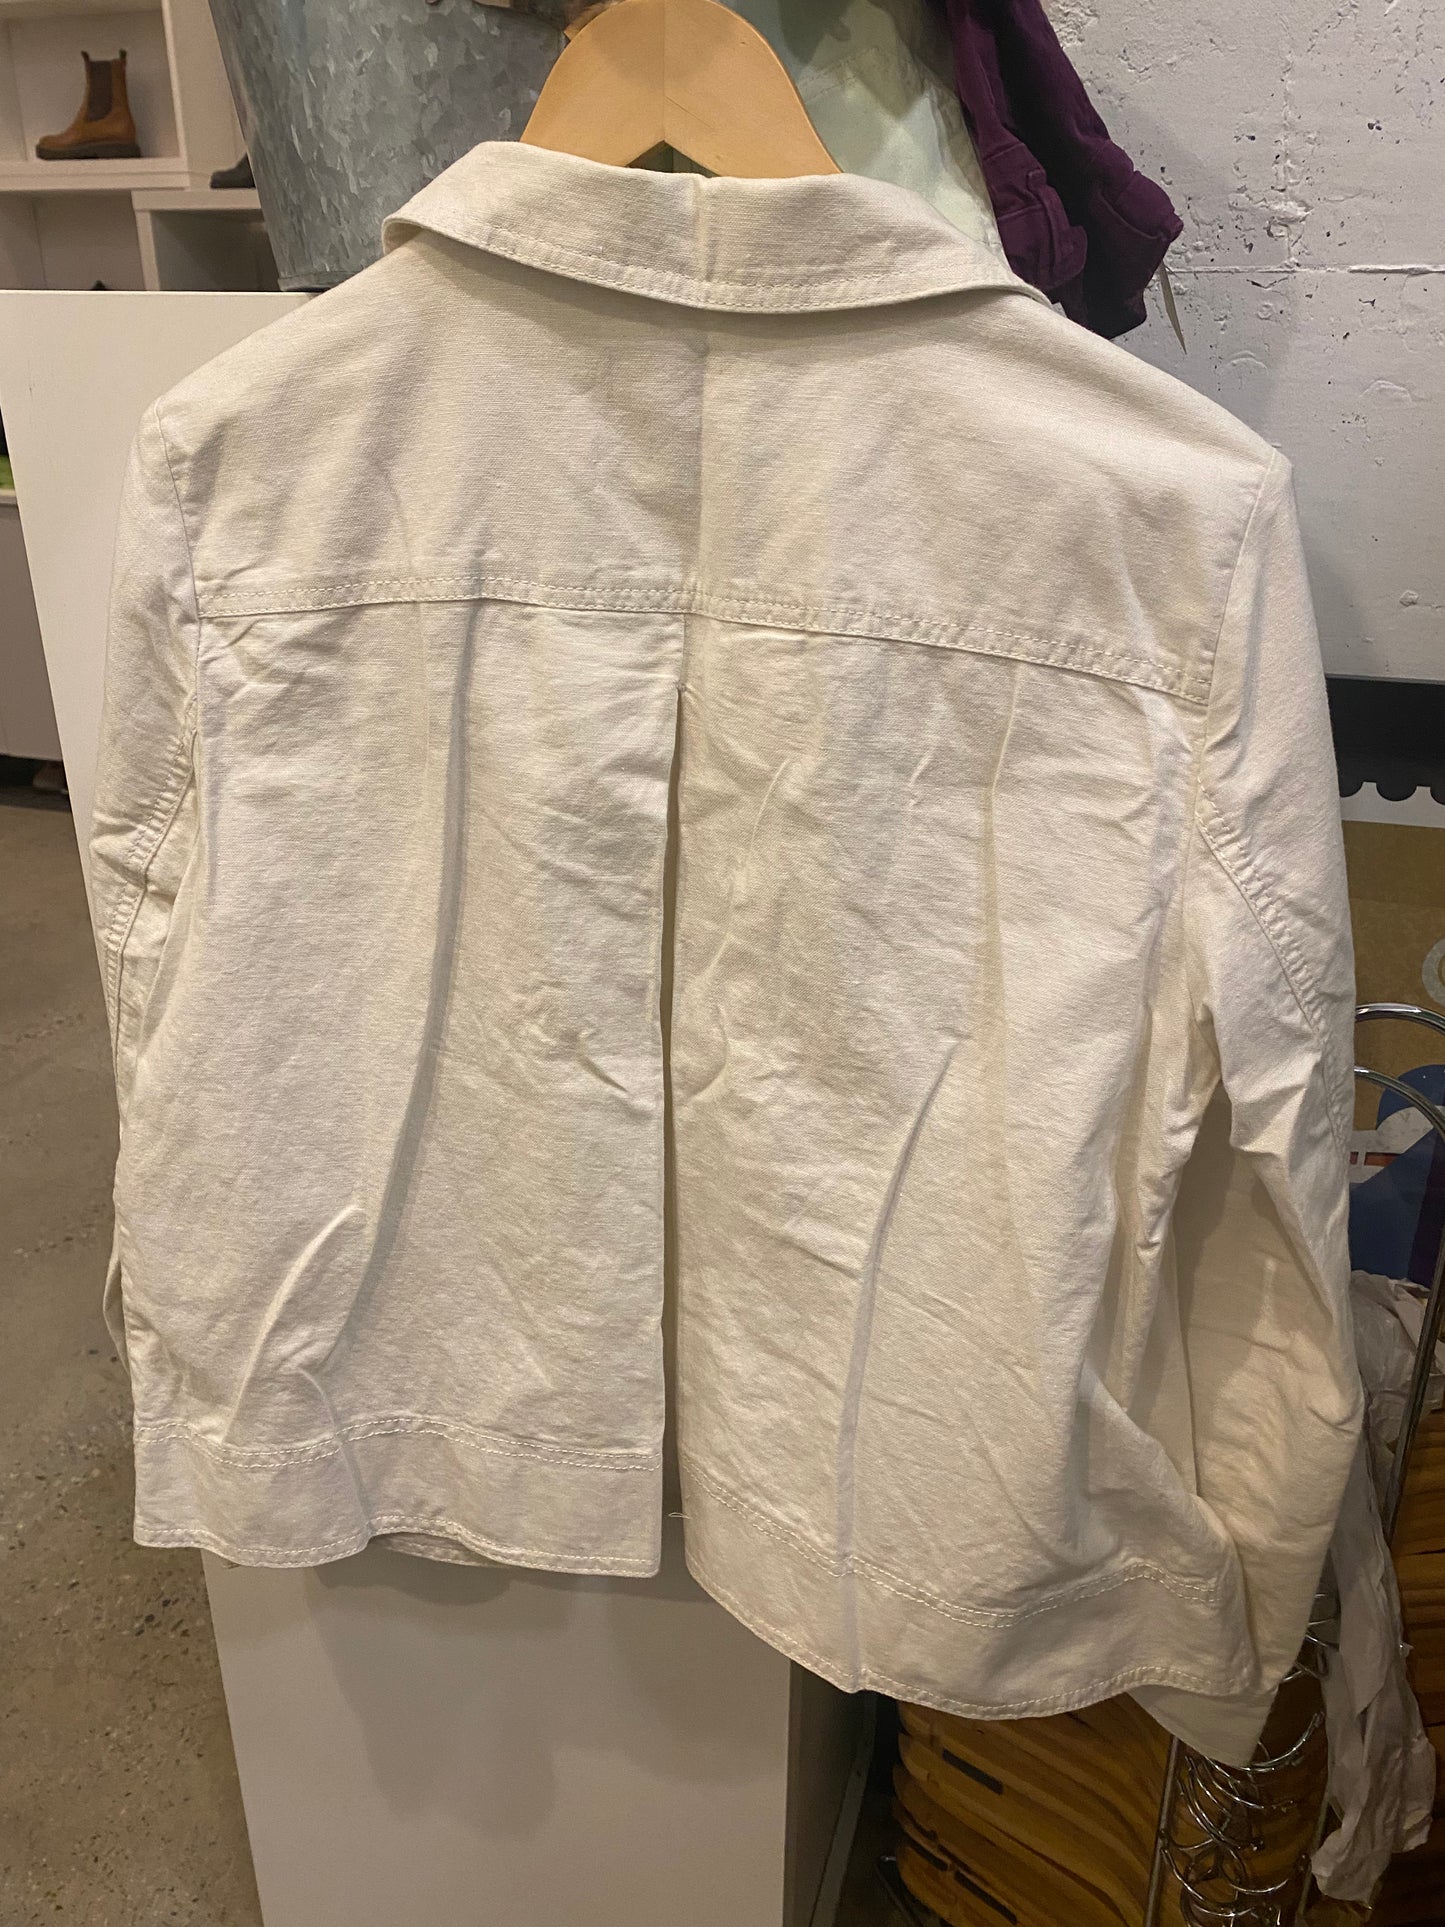 Consignment 4903-13 Loft cream jacket sz M linen/cotton